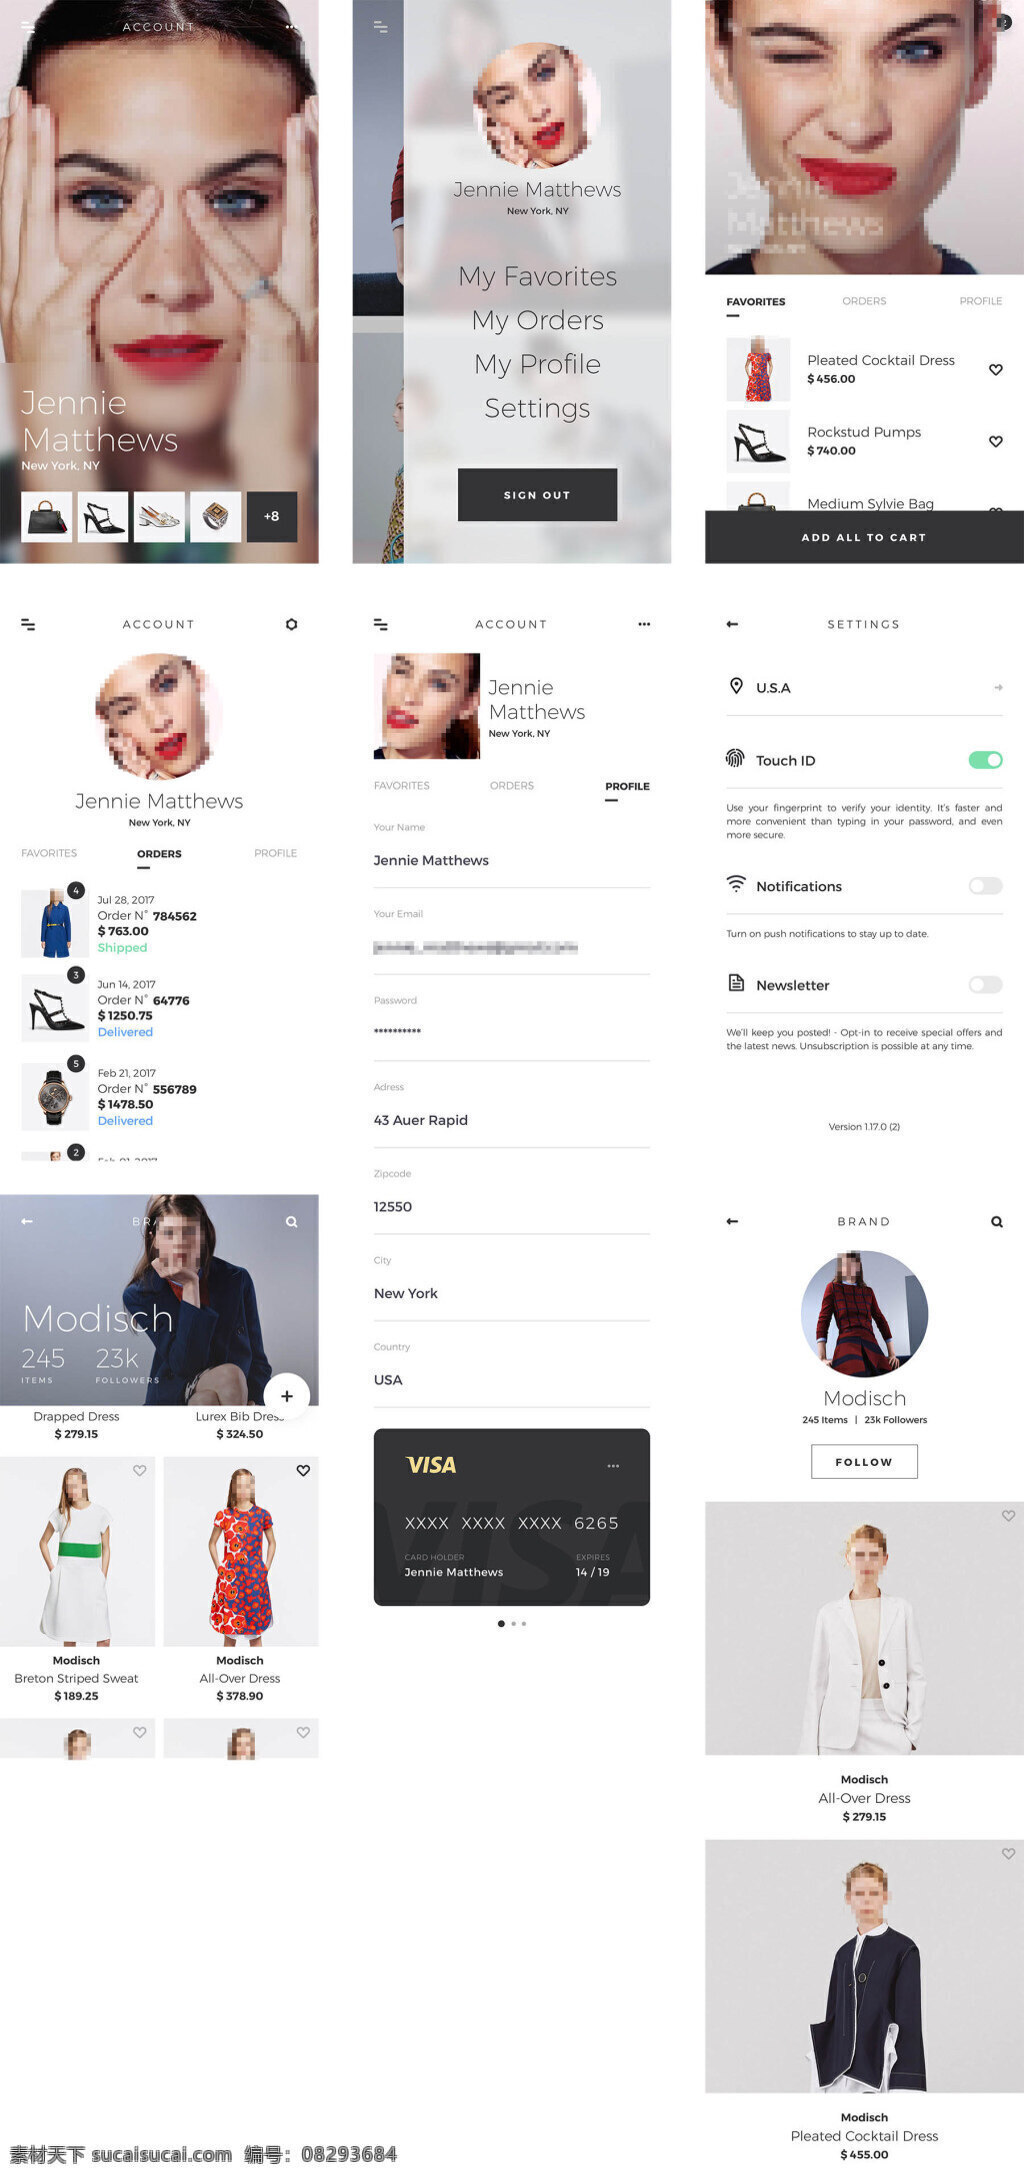 时尚 个人资料 应用 界面 sketch 个性 头像 个人中心 app 购物 应用界面 modisch 格式